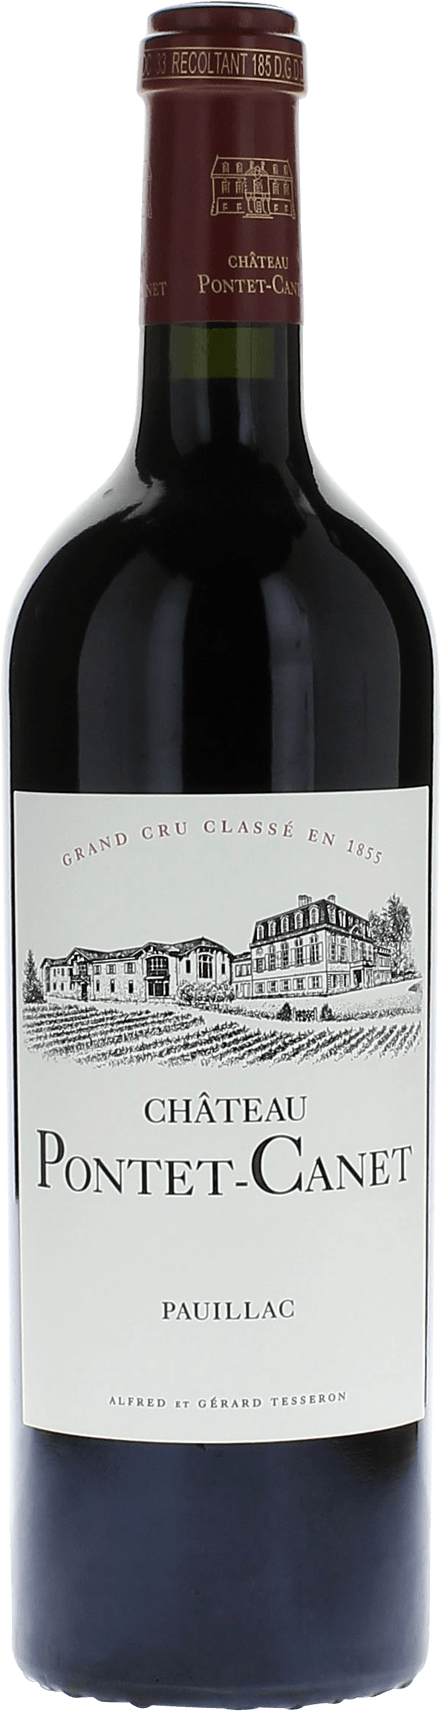 Pontet canet 2012 5me Grand cru class Pauillac, Bordeaux rouge